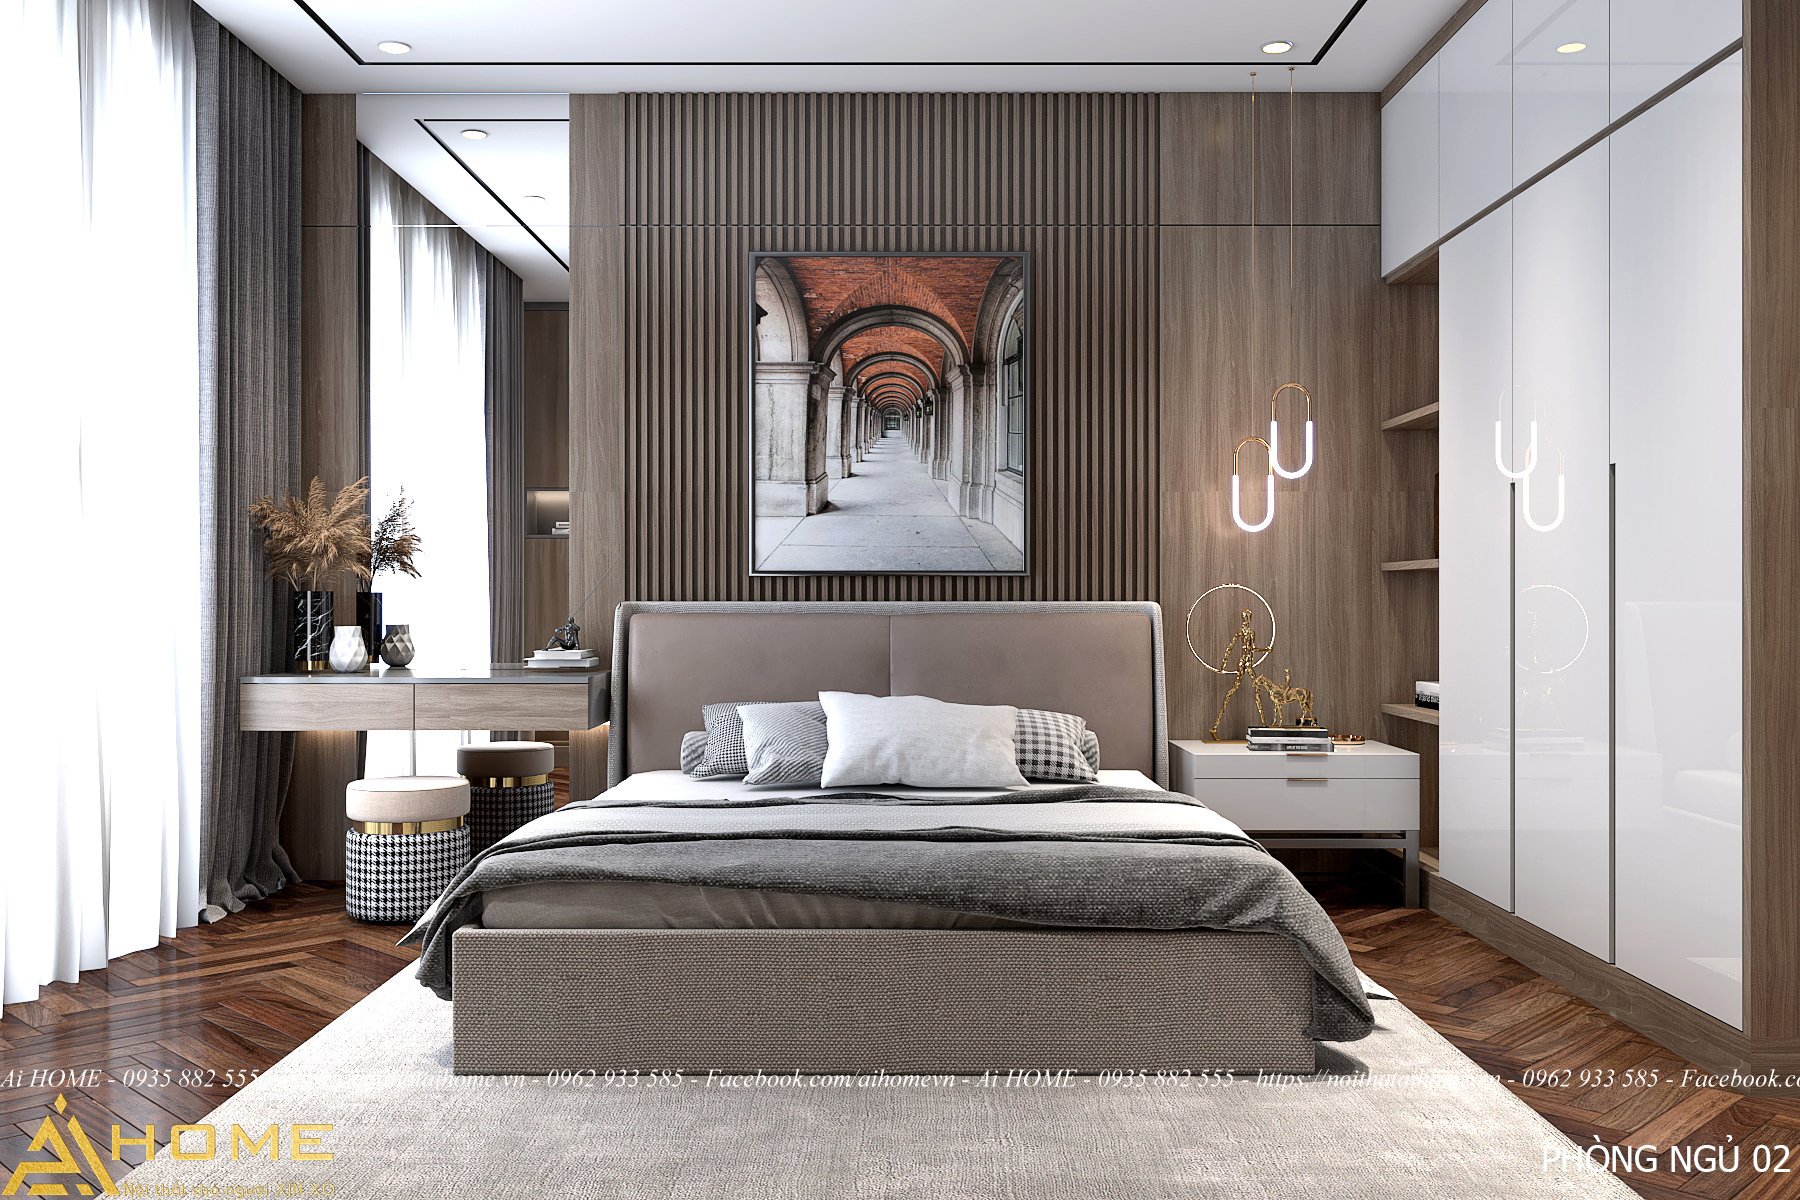 Mẫu phòng ngủ hiện đại có thể mang lại cho bạn nhiều cảm hứng trang trí. Với sự sáng tạo của các nhà thiết kế, các mẫu phòng ngủ với các kiểu dáng, gam màu và phong cách đa dạng giúp bạn chọn được phòng ngủ độc đáo và tận hưởng không gian thoải mái.